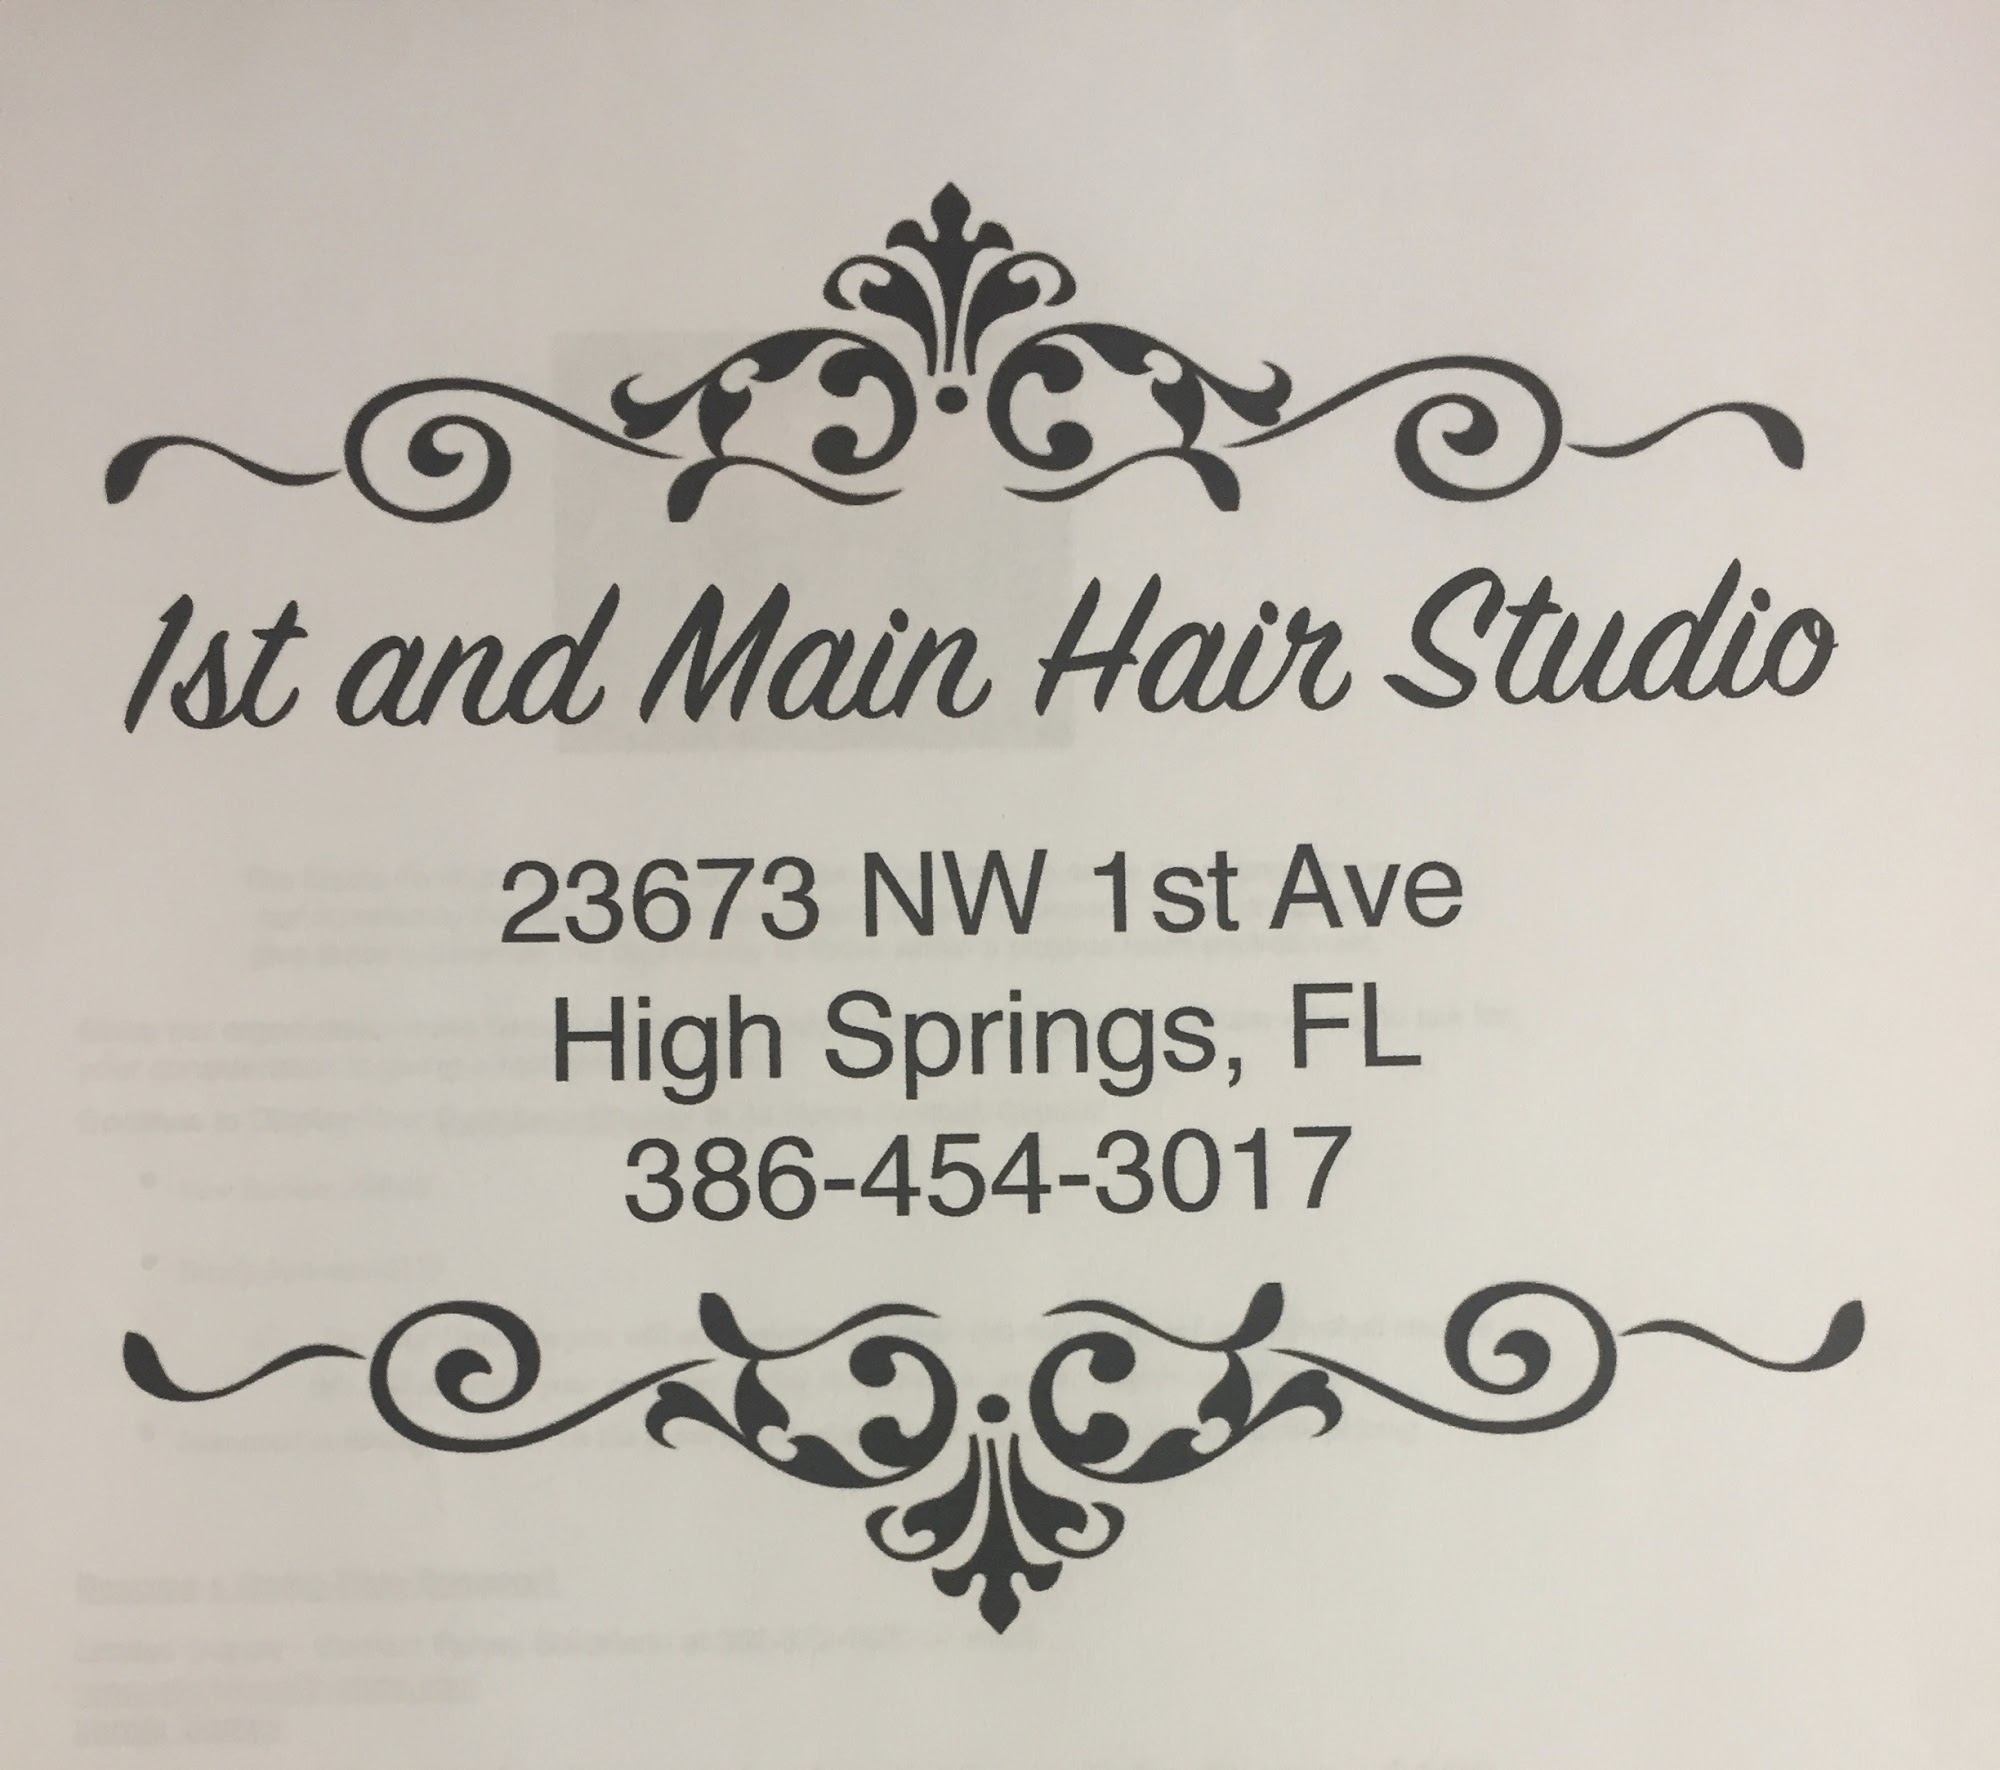 1st and Main Hair Studio